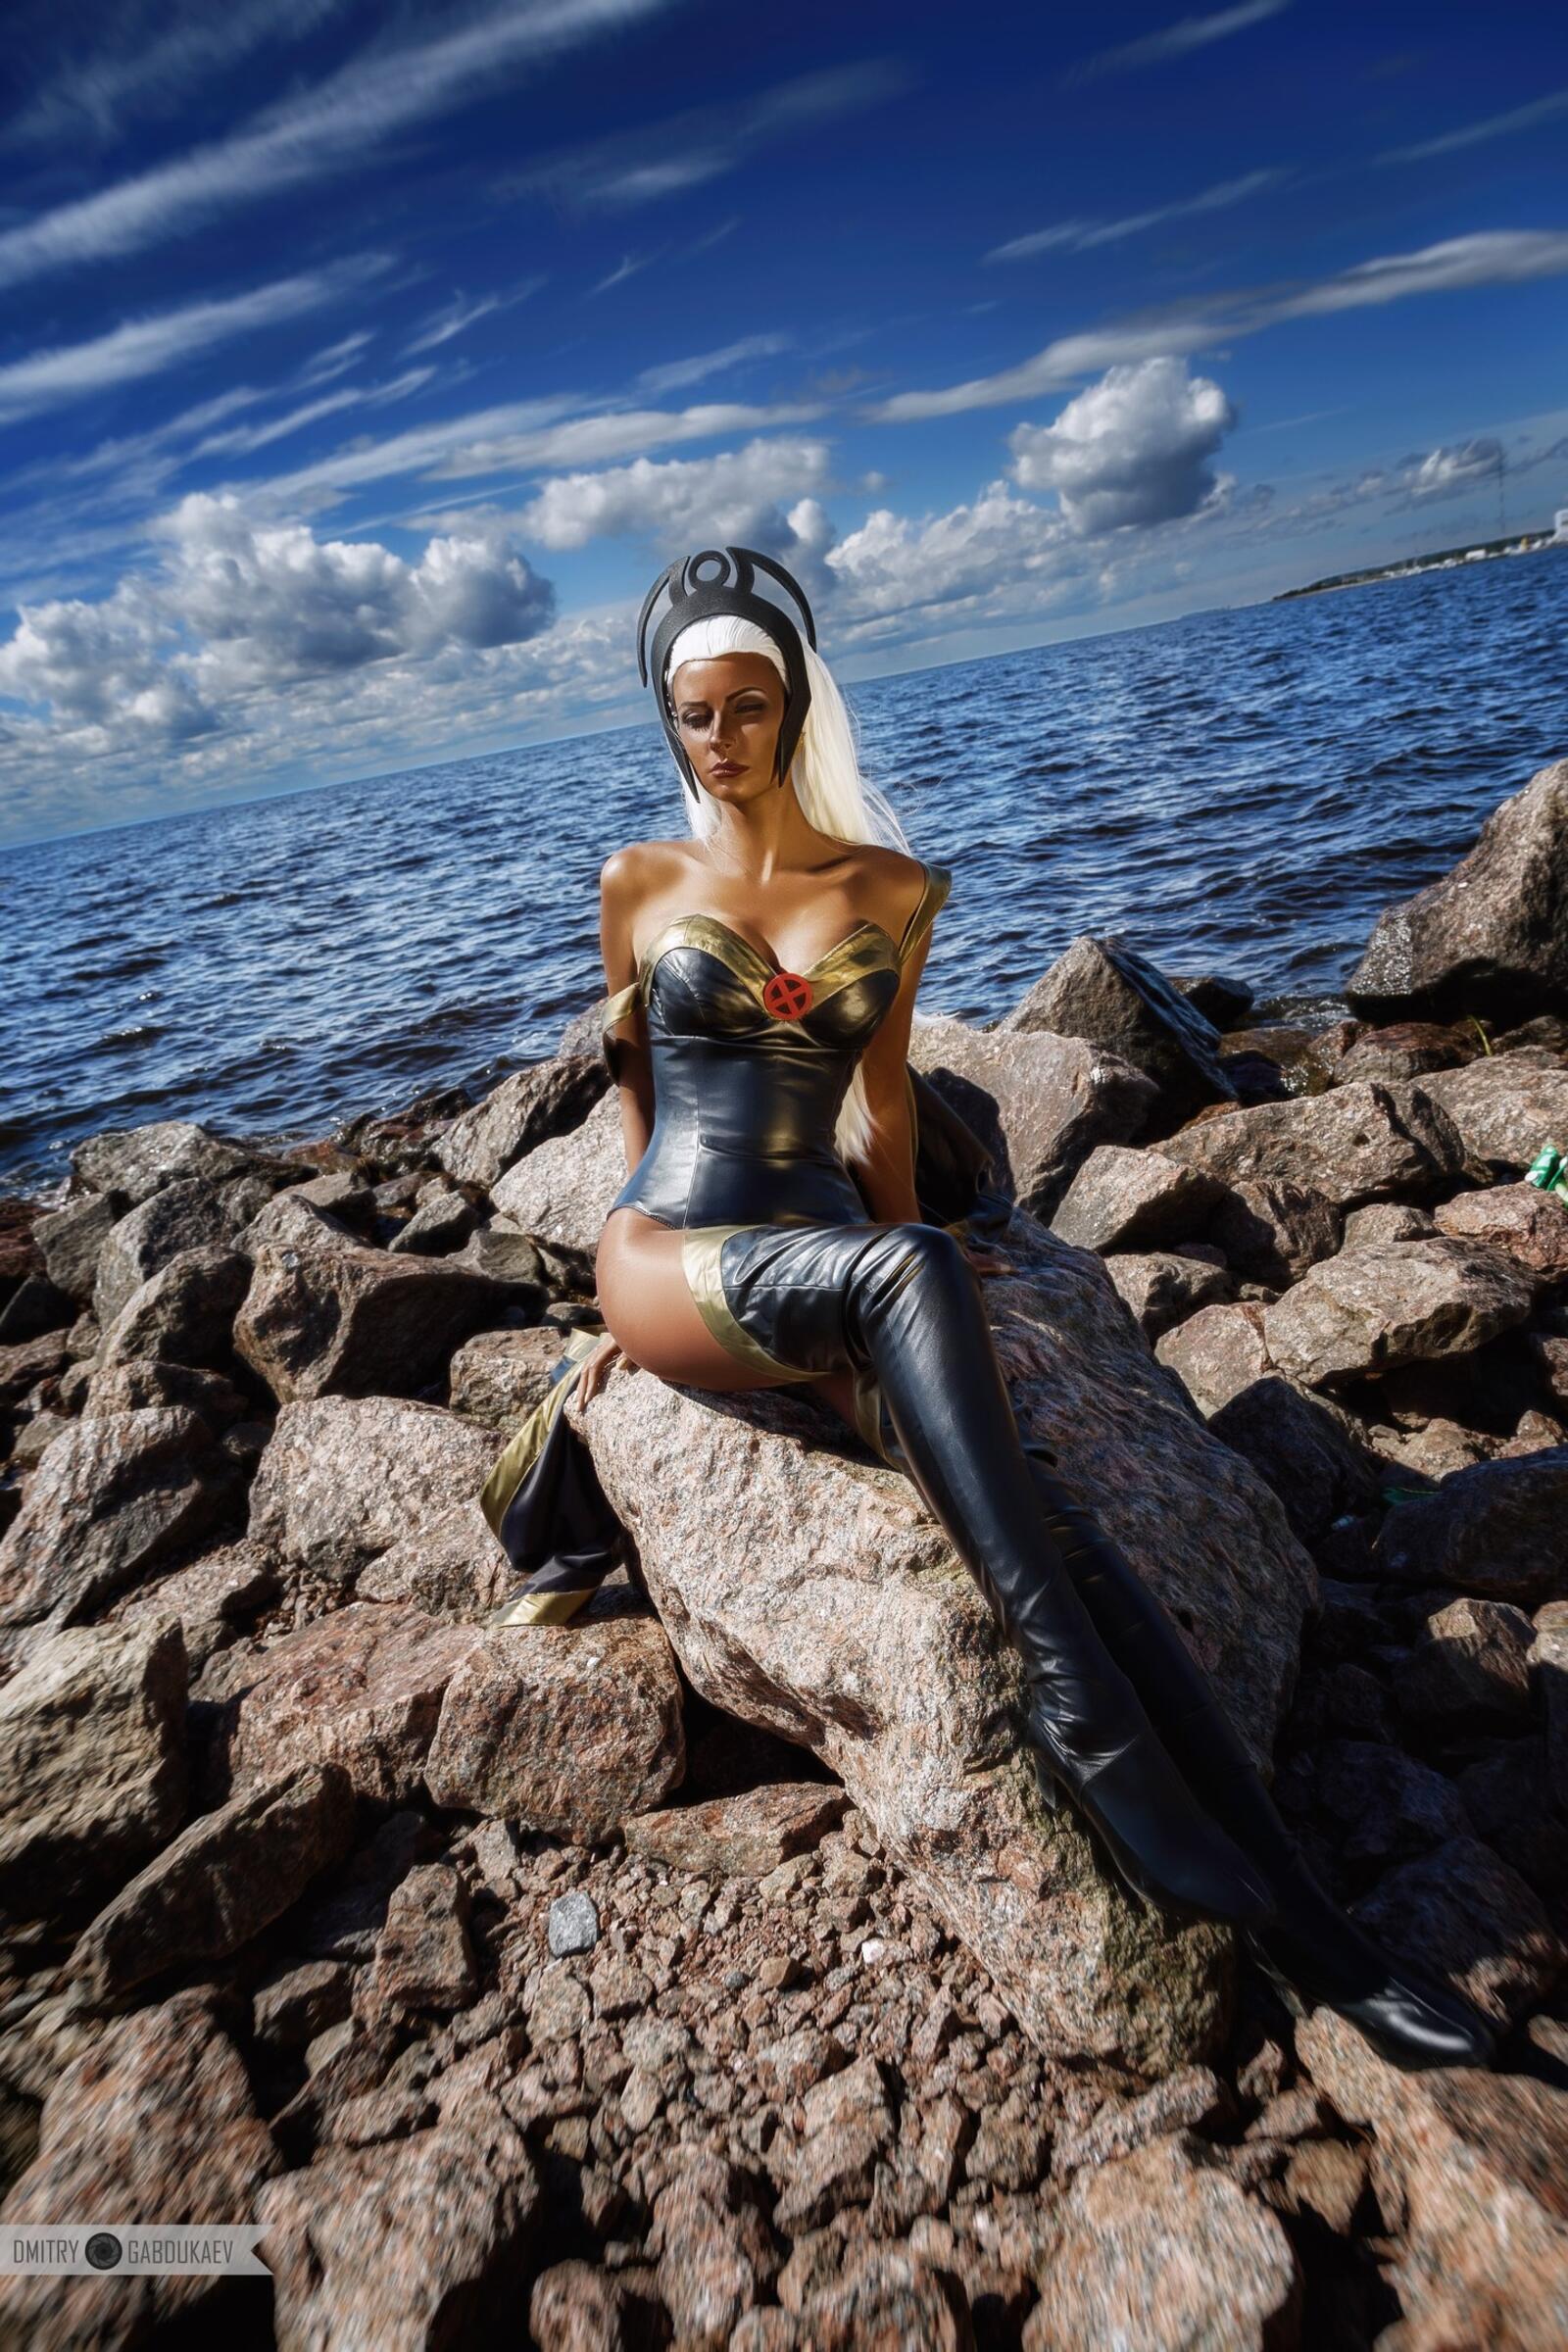 免费照片安雅-沃耶沃多娃在海滩上拍摄cosplay照片